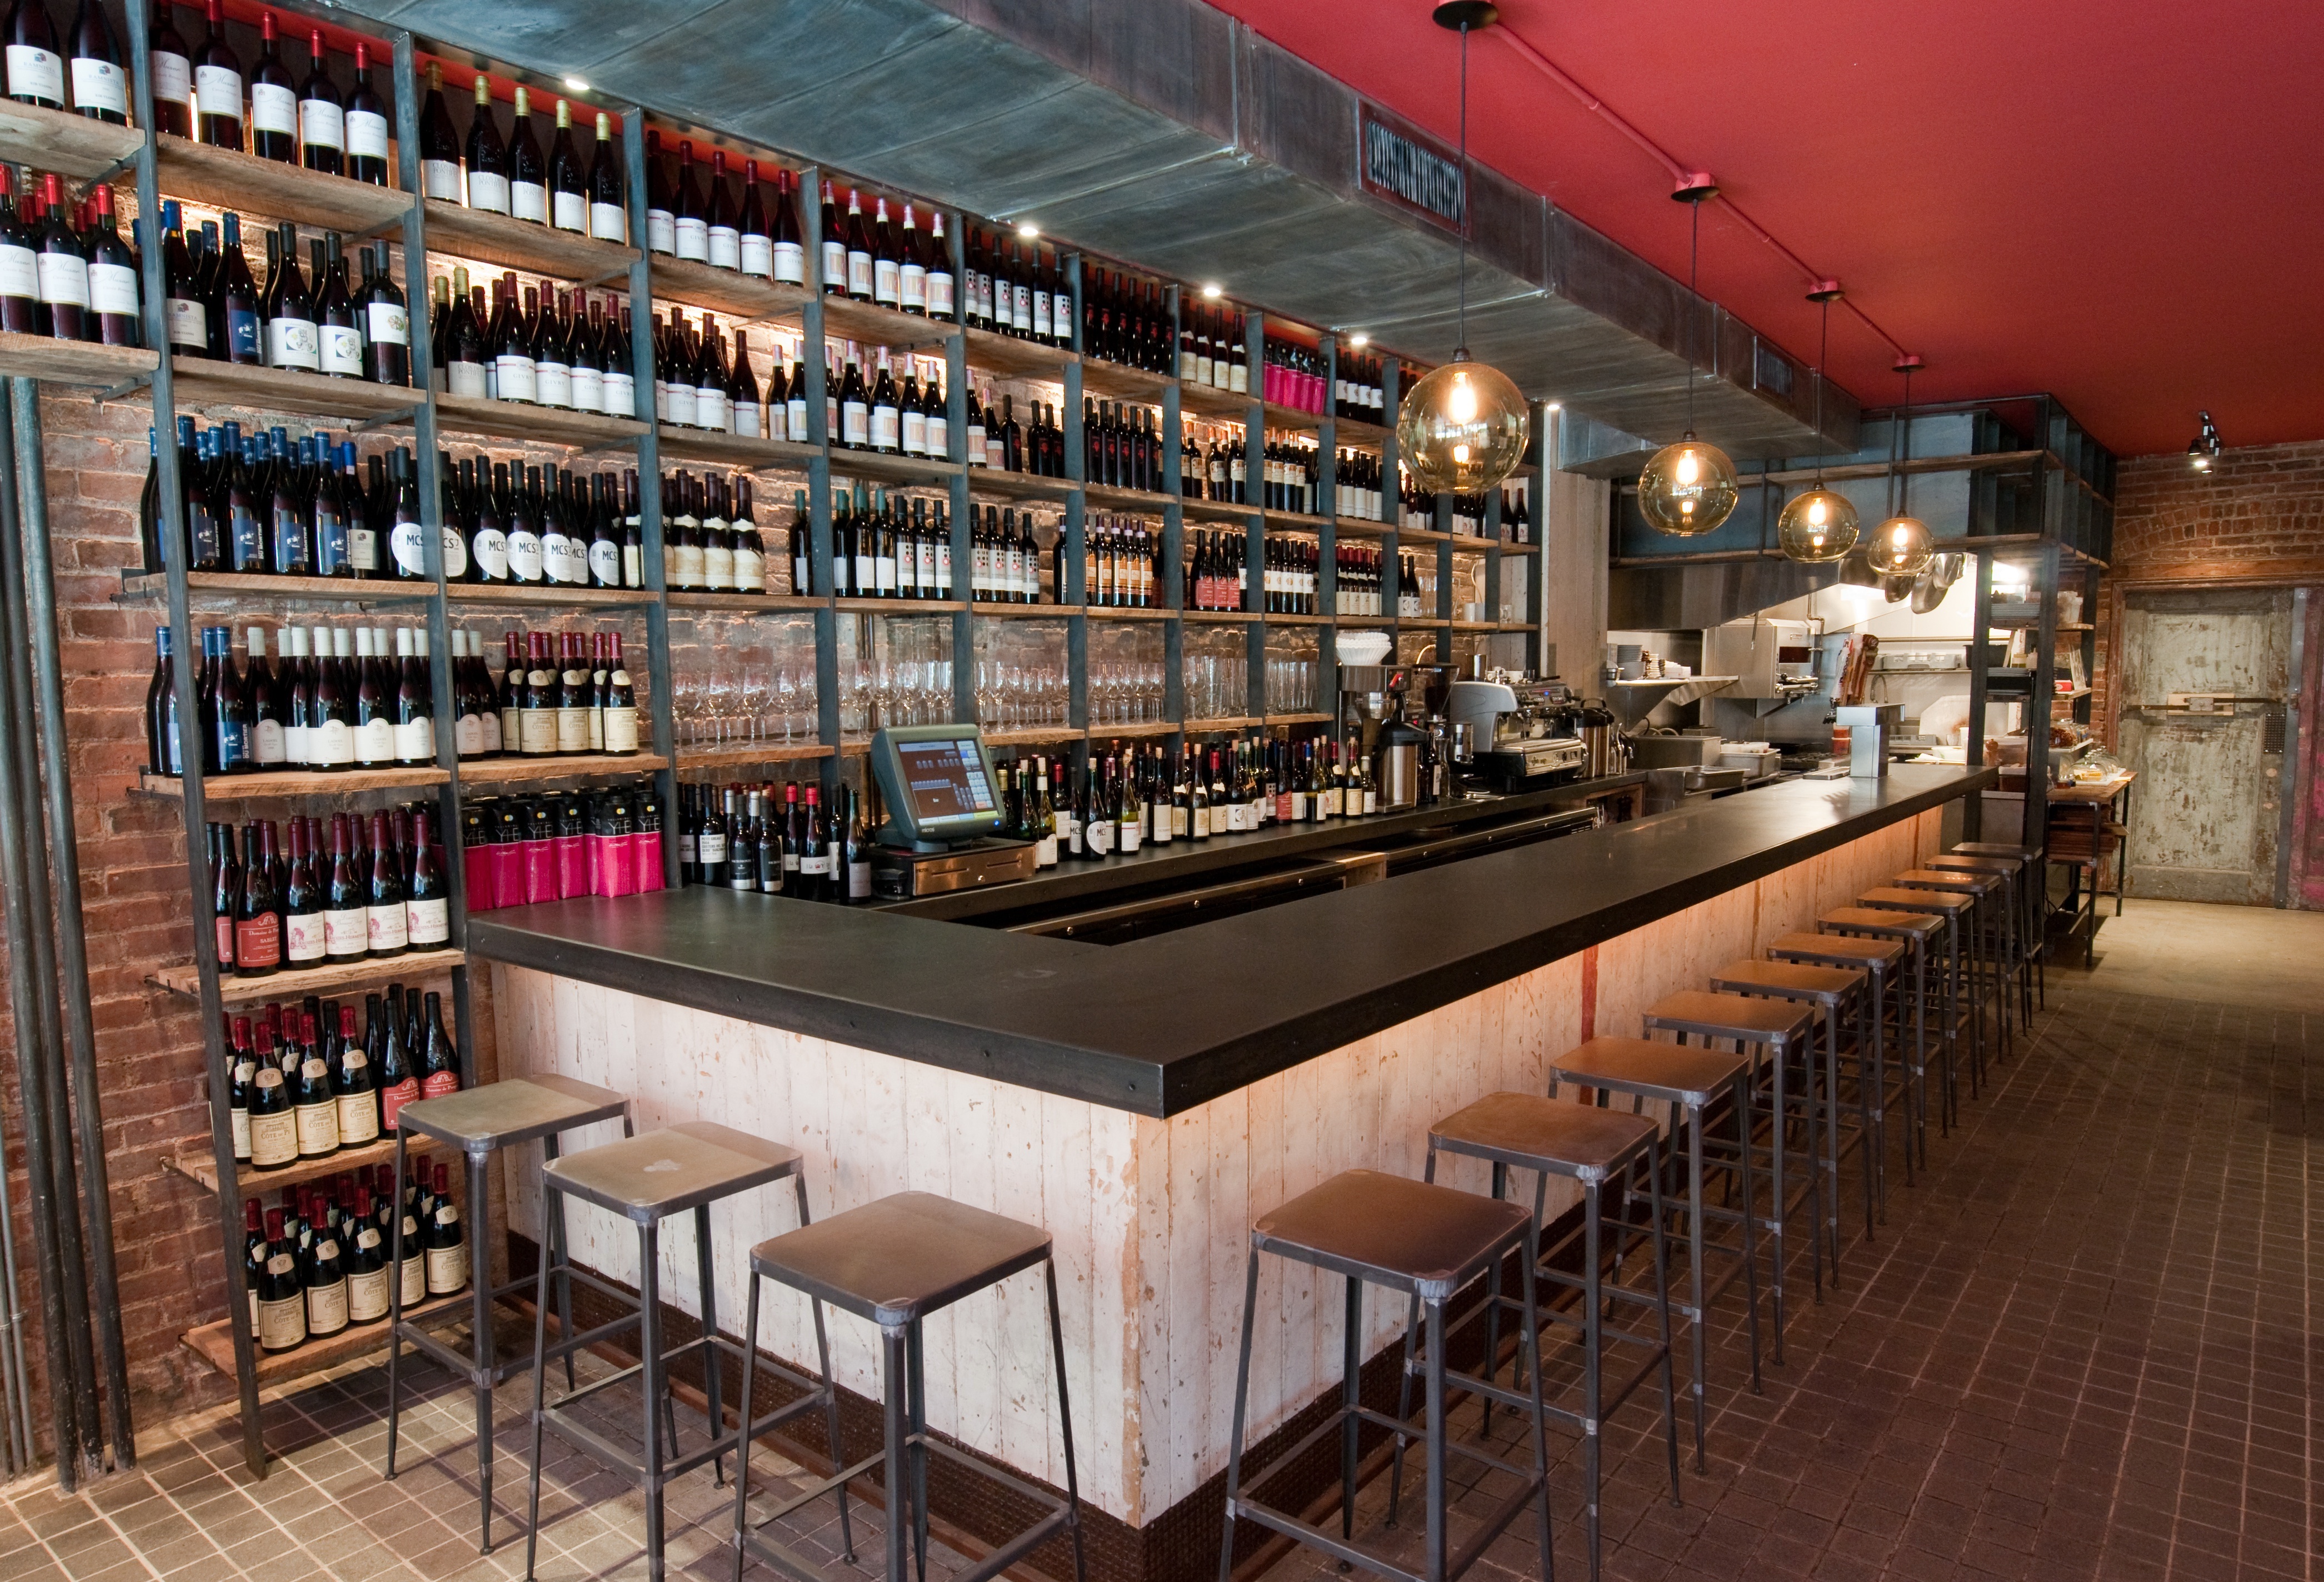 New Yorks Best New Wine BARS - Restaurant Girl - Best Local ...